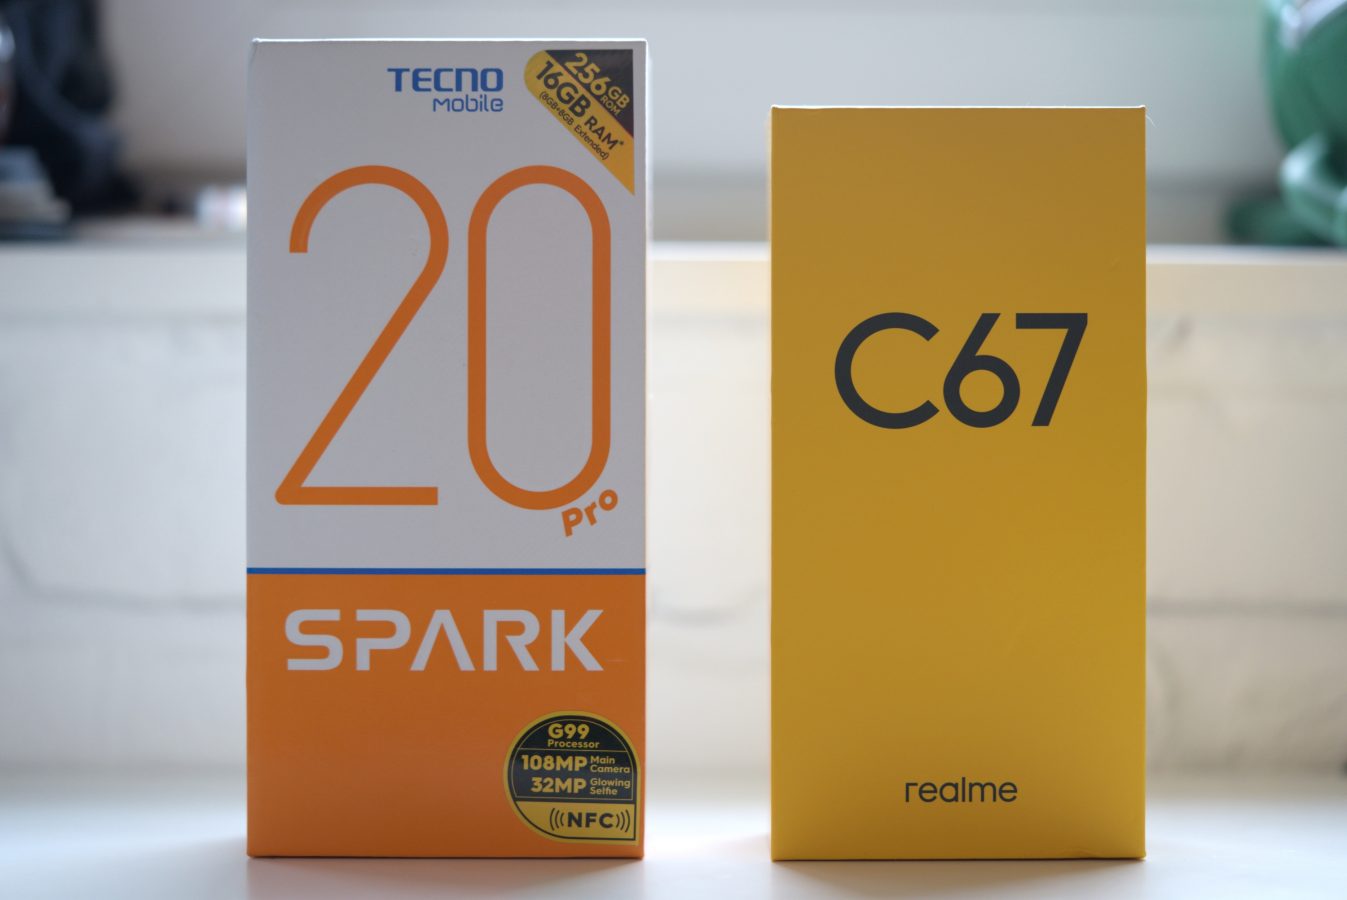 realme C67 vs Tecno Spark 20 Pro